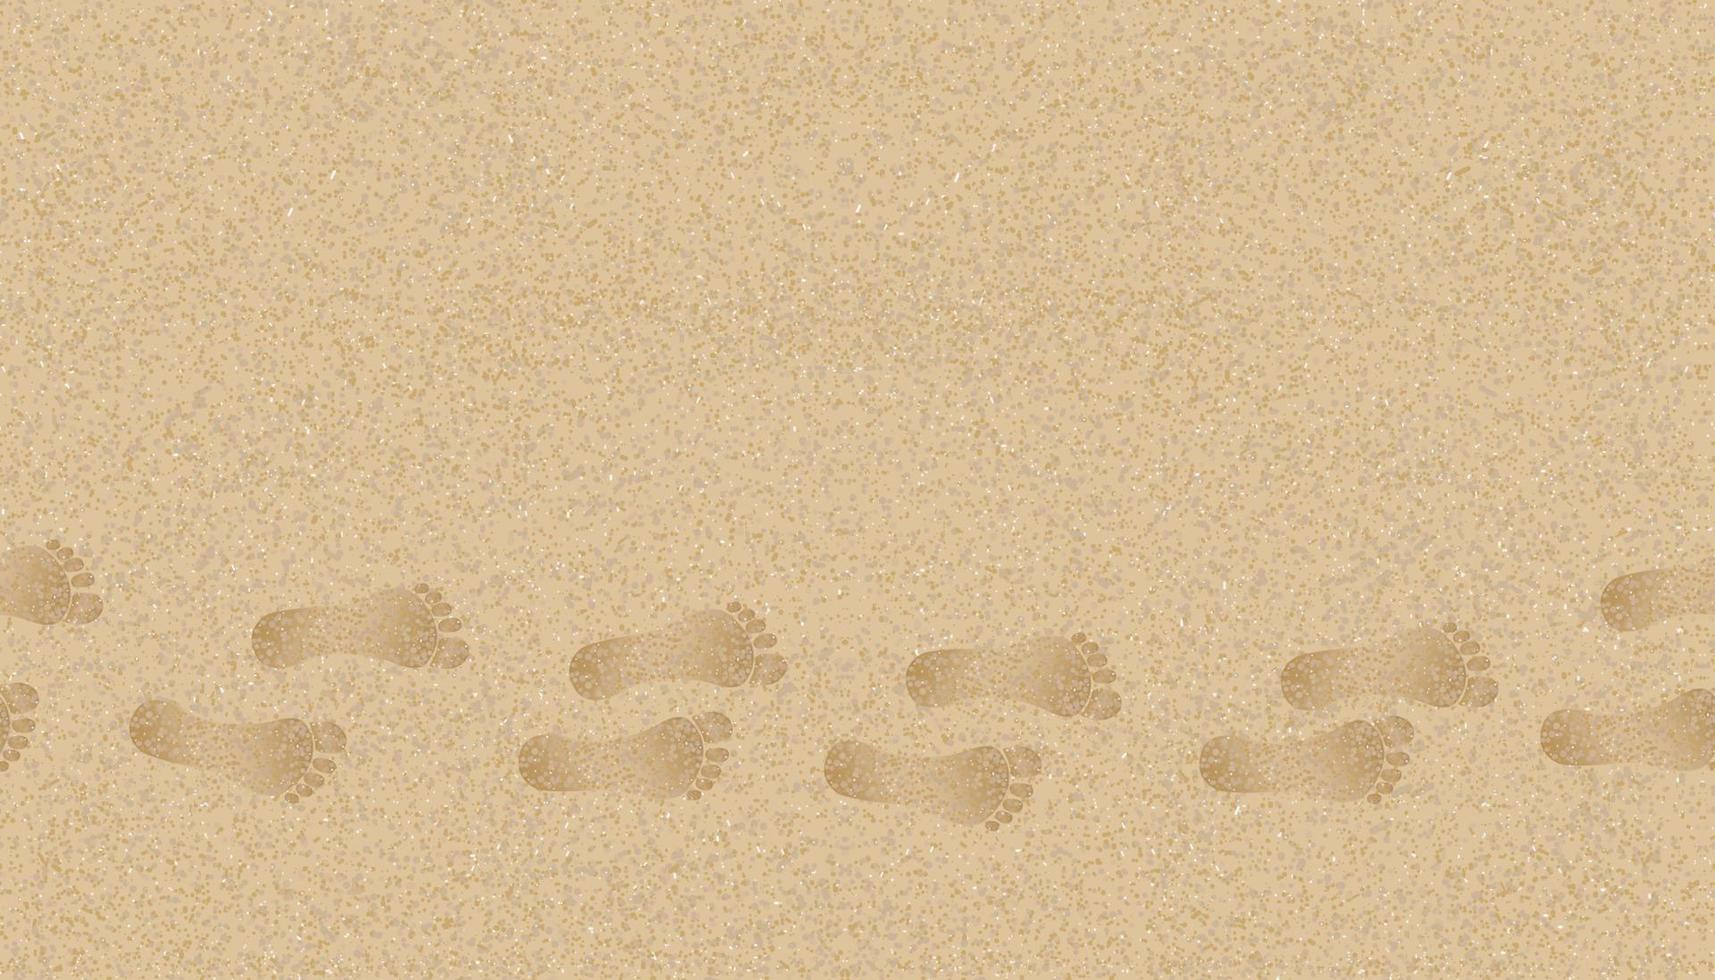 sömlösa mönster textur bakgrund fotspår av mänskliga fötter på sandstranden background.vector illustration bakgrund ändlösa bruna sanddyner med barfota för sommar banner bakgrund. vektor